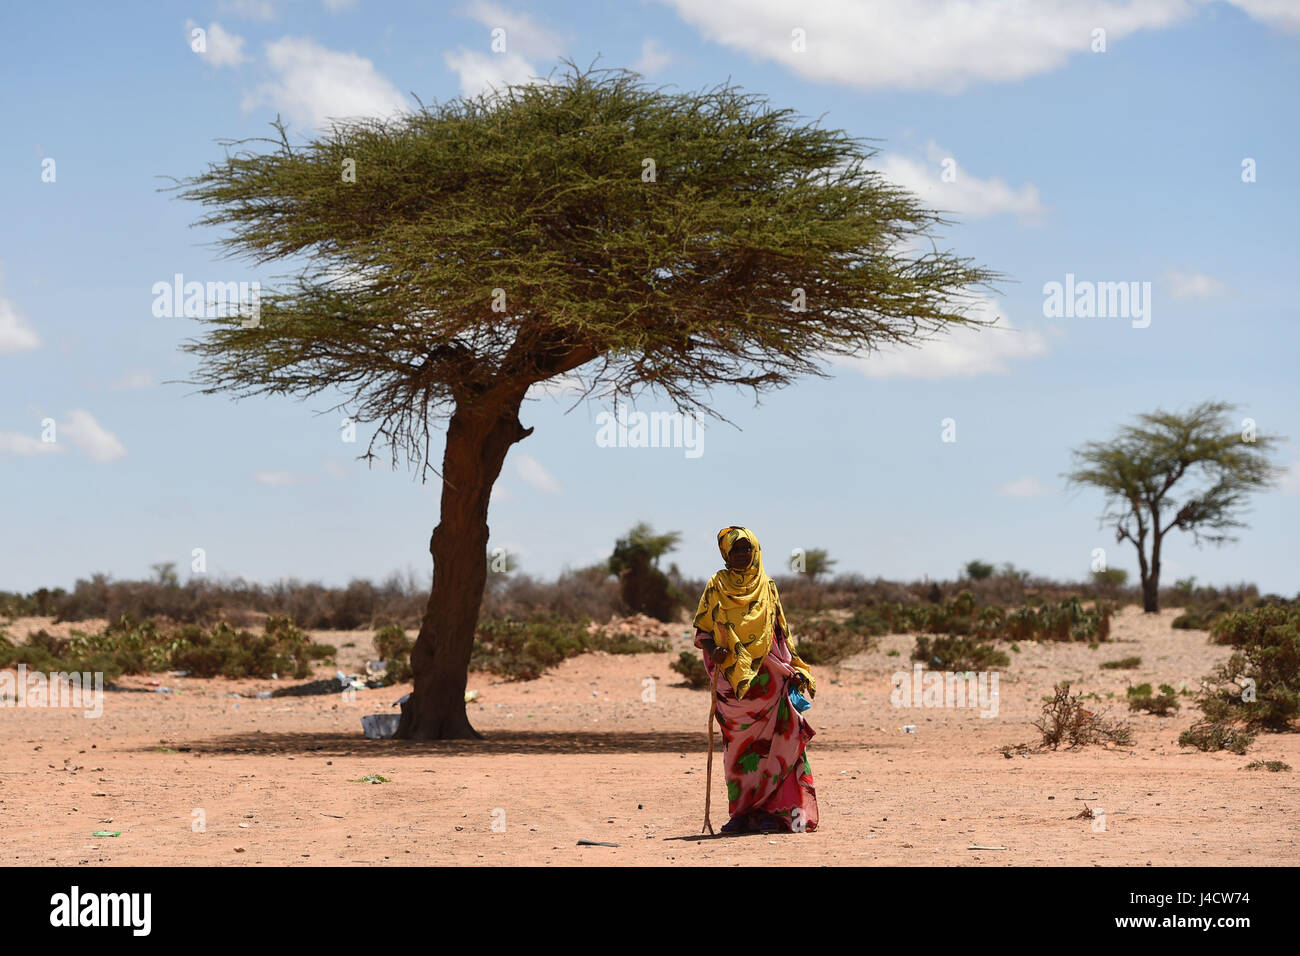 A villager in Sayla Bari, Somaliland. Stock Photo